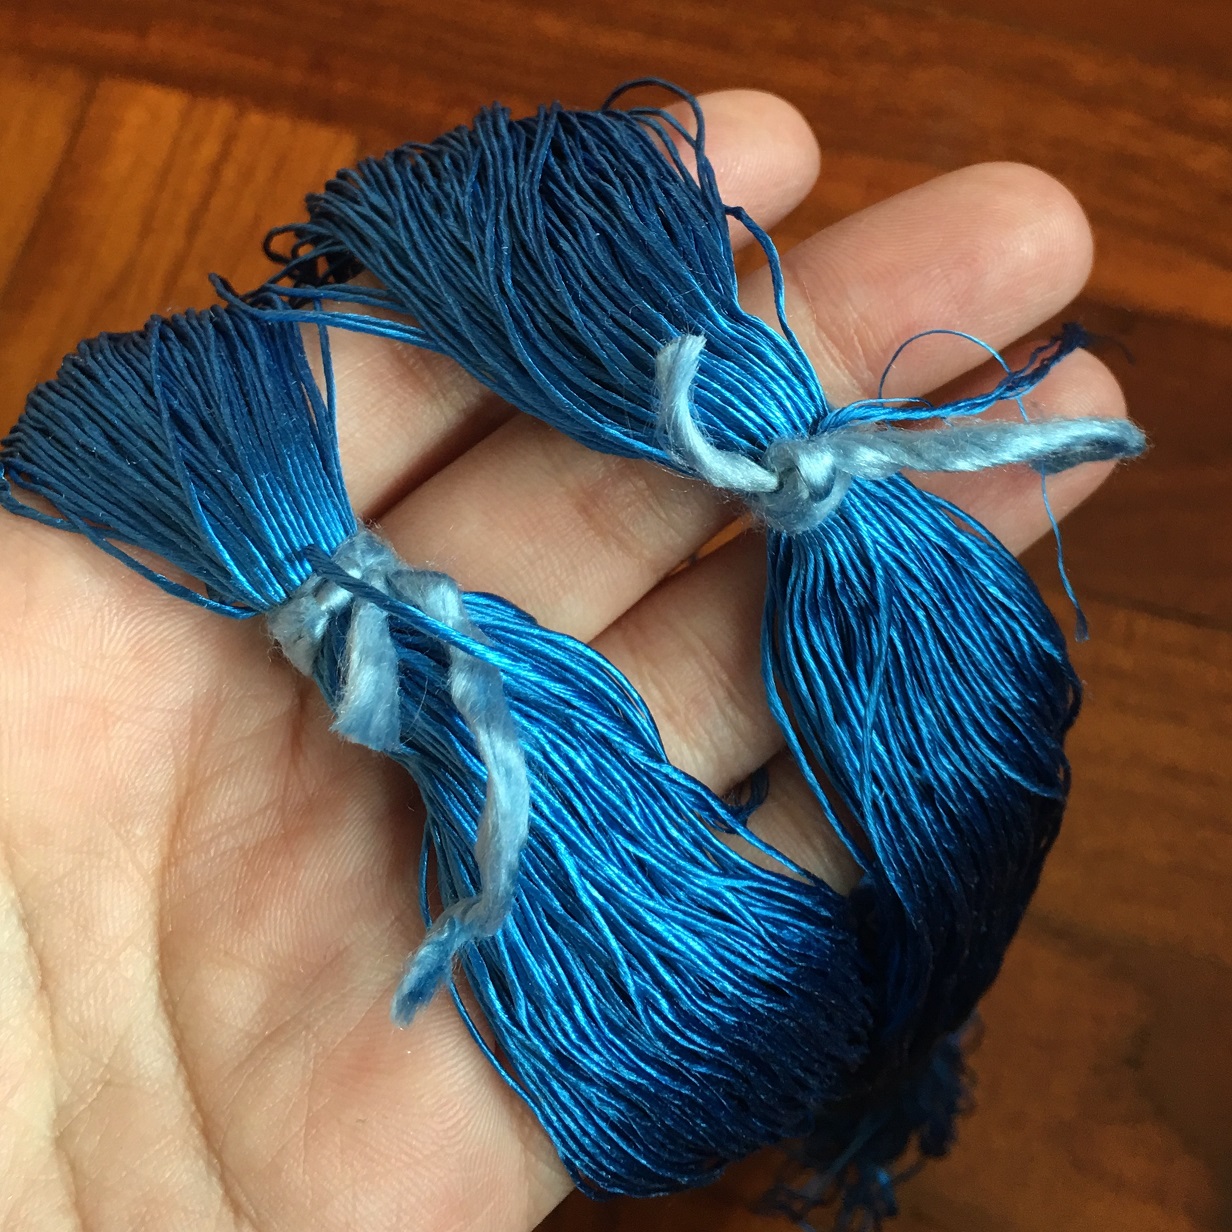 カセ状の絹糸の扱い方